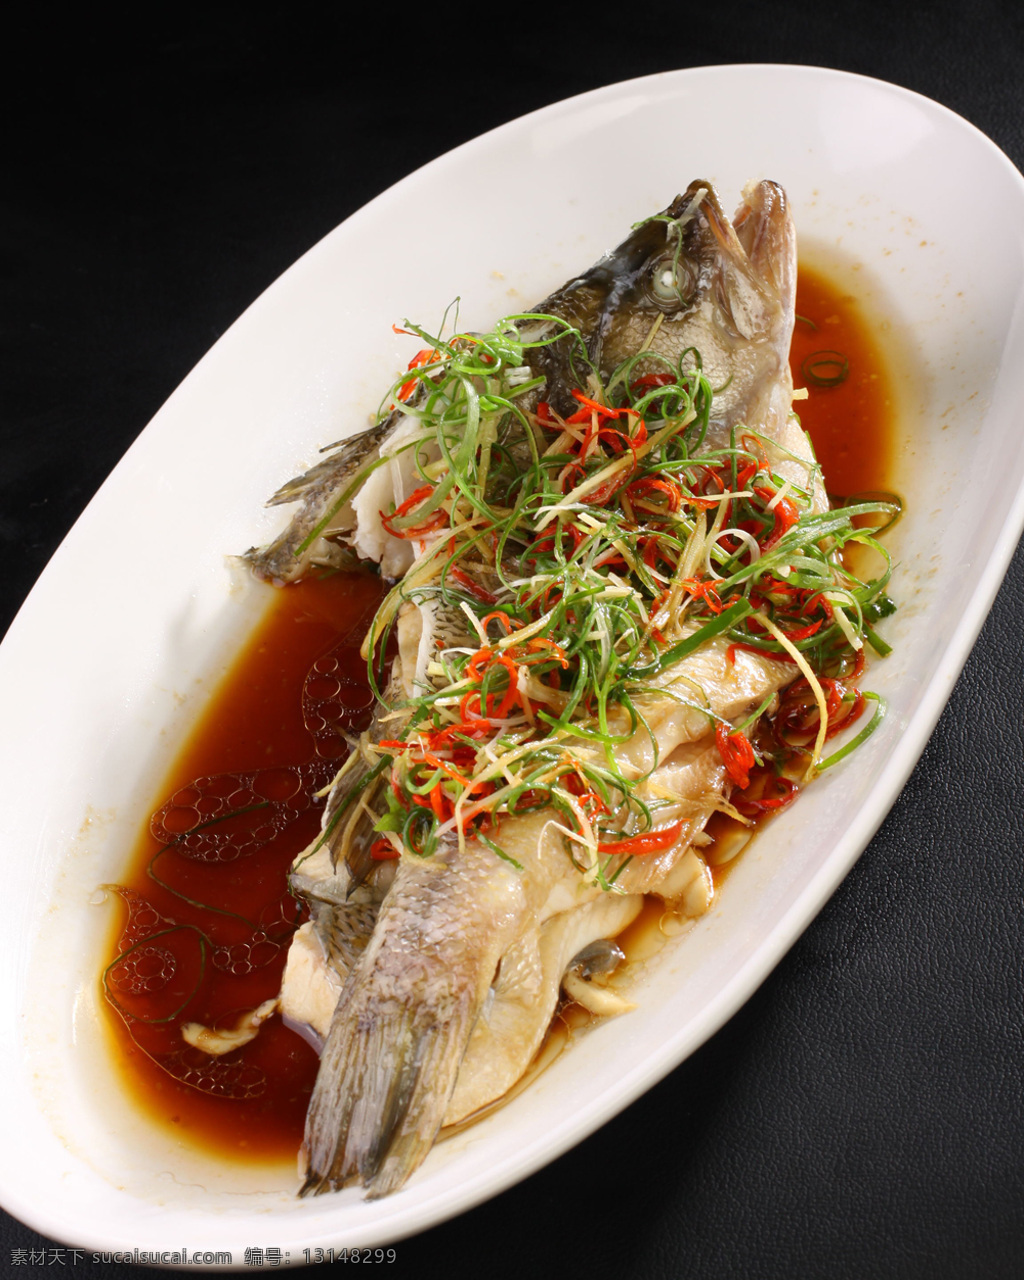 清蒸鲈鱼 鲈鱼 清蒸 清淡 耗油鲈鱼 水产 美味 小吃 餐饮美食 传统美食